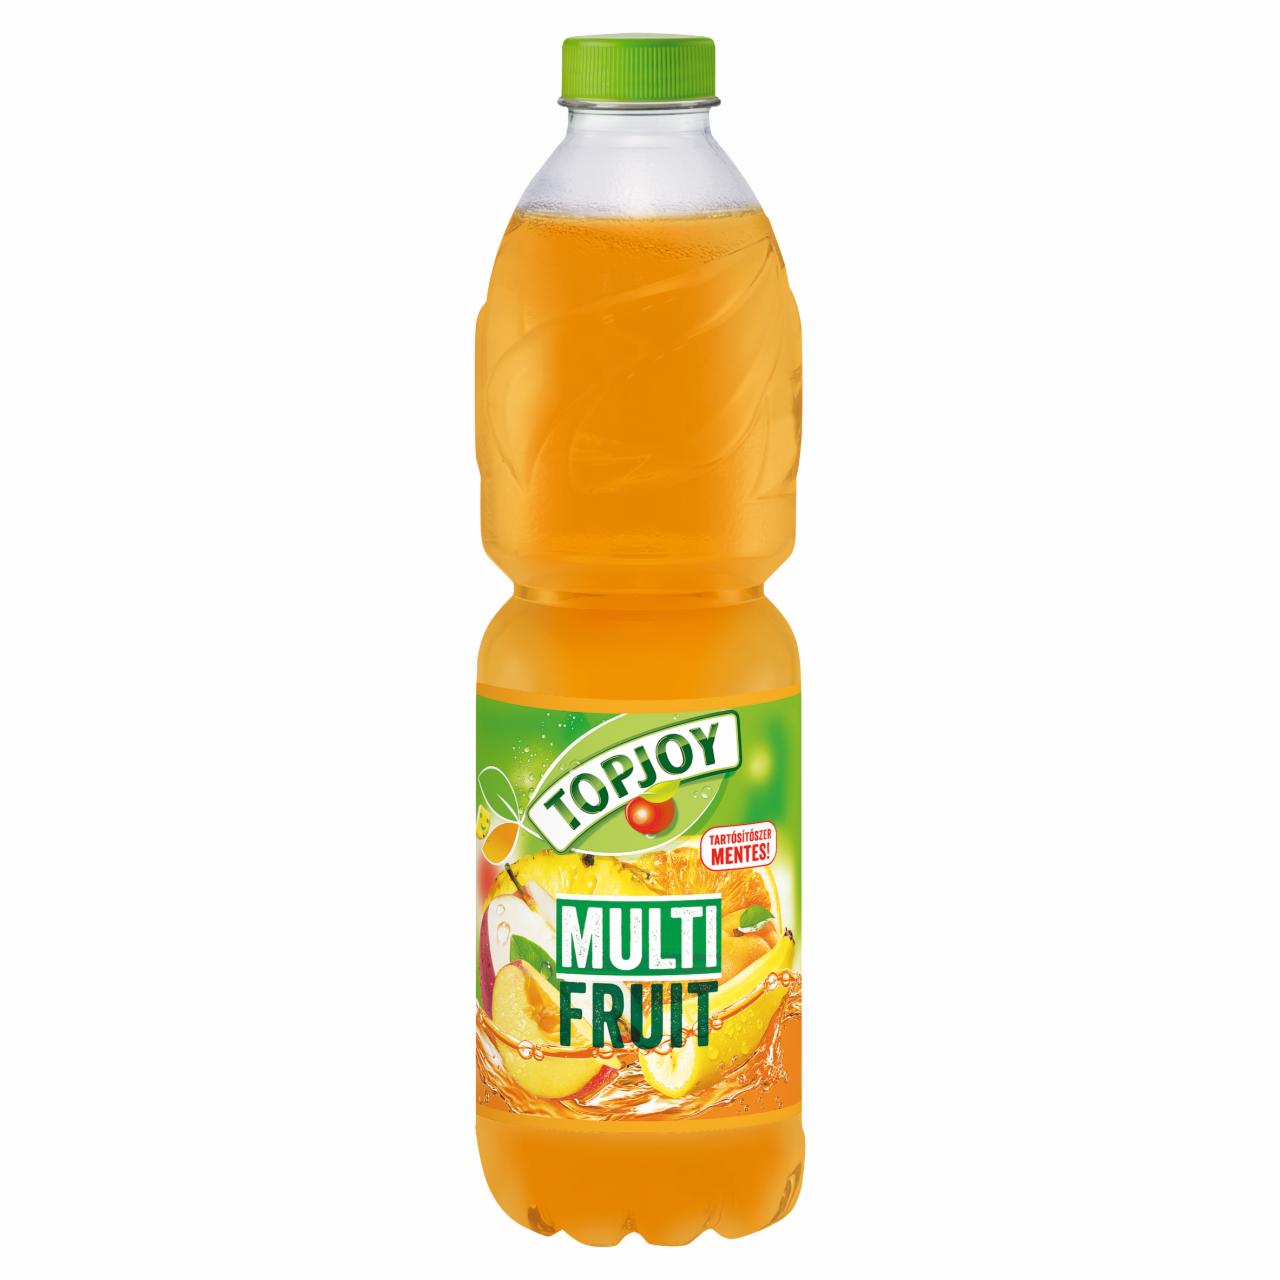 Képek - Topjoy Multifruit szénsavmentes vegyes gyümölcsital 1,5 l